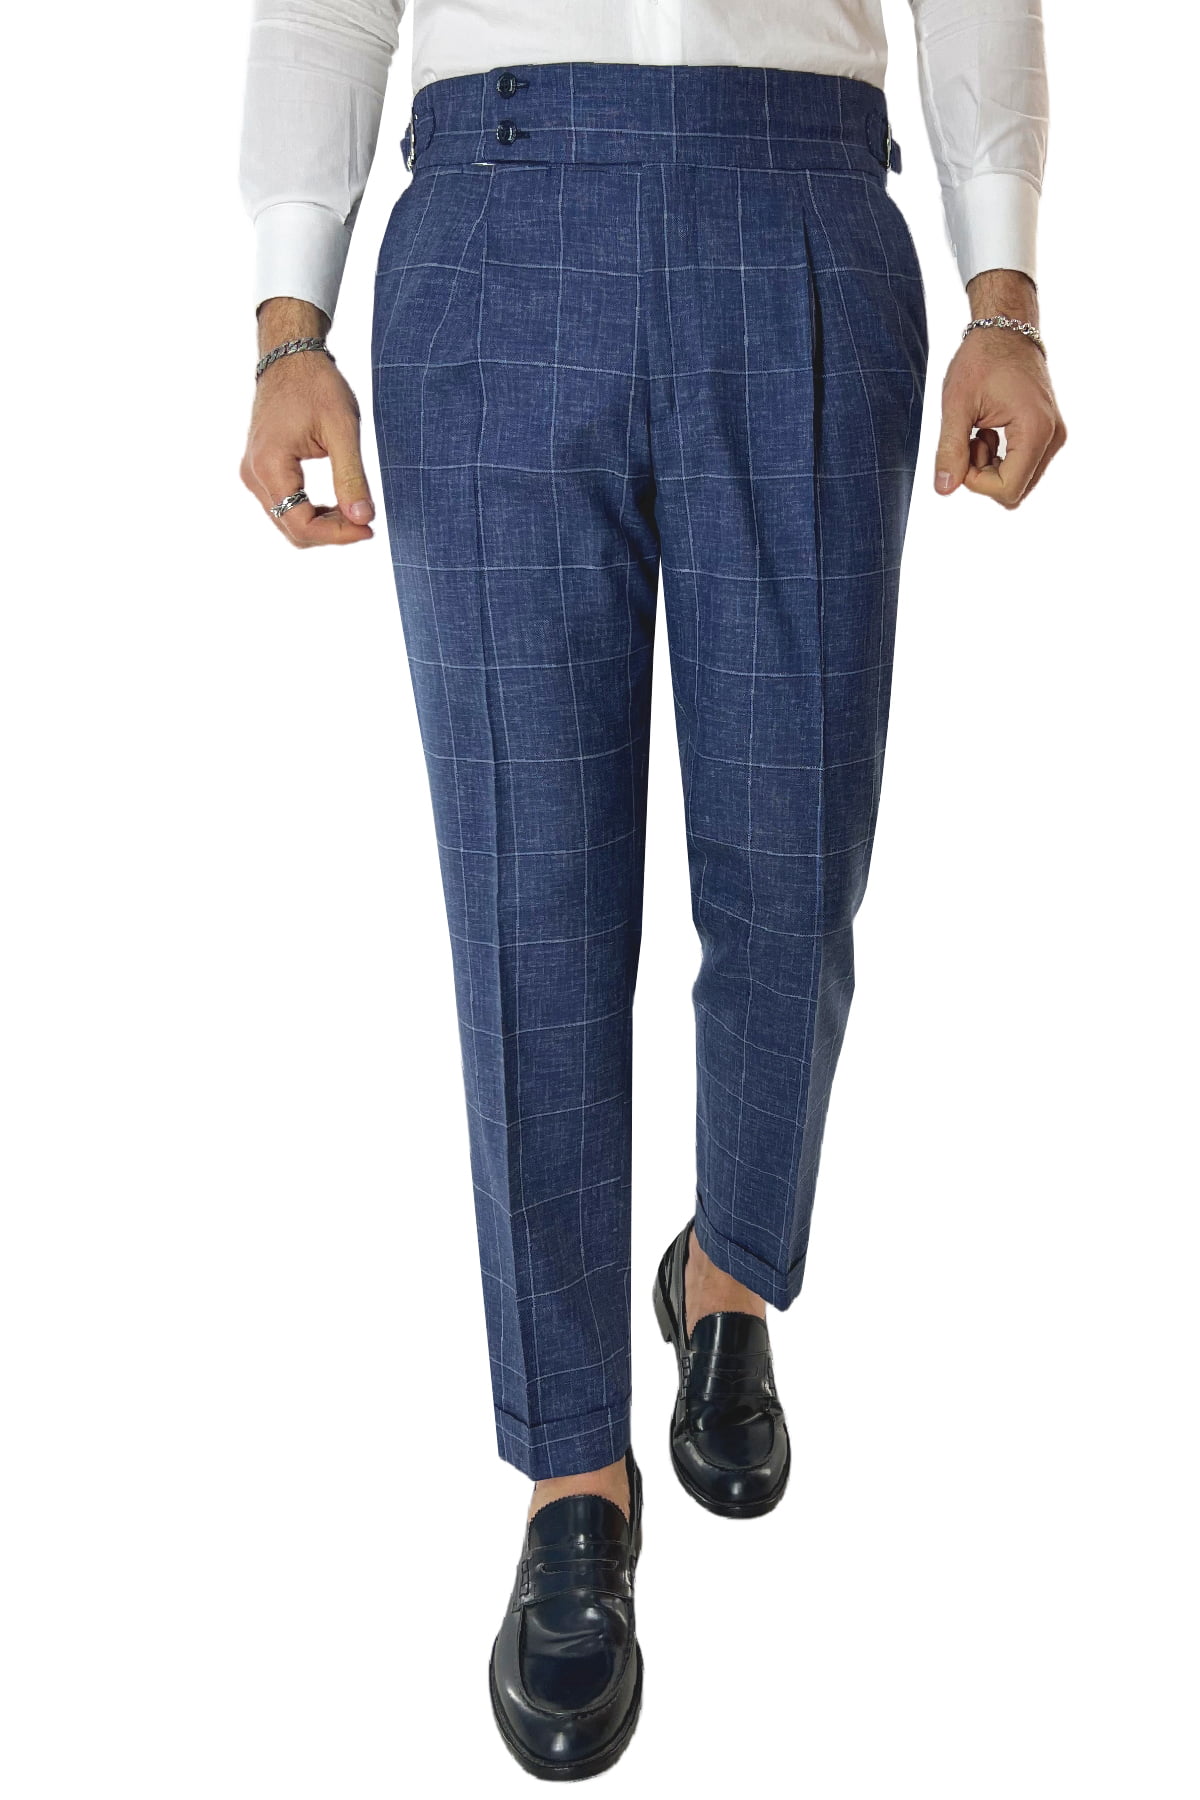 Pantalone uomo blu denim fantasia quadri fresco lana 250 grammi vita alta con pinces fibbie laterali e risvolto 4cm